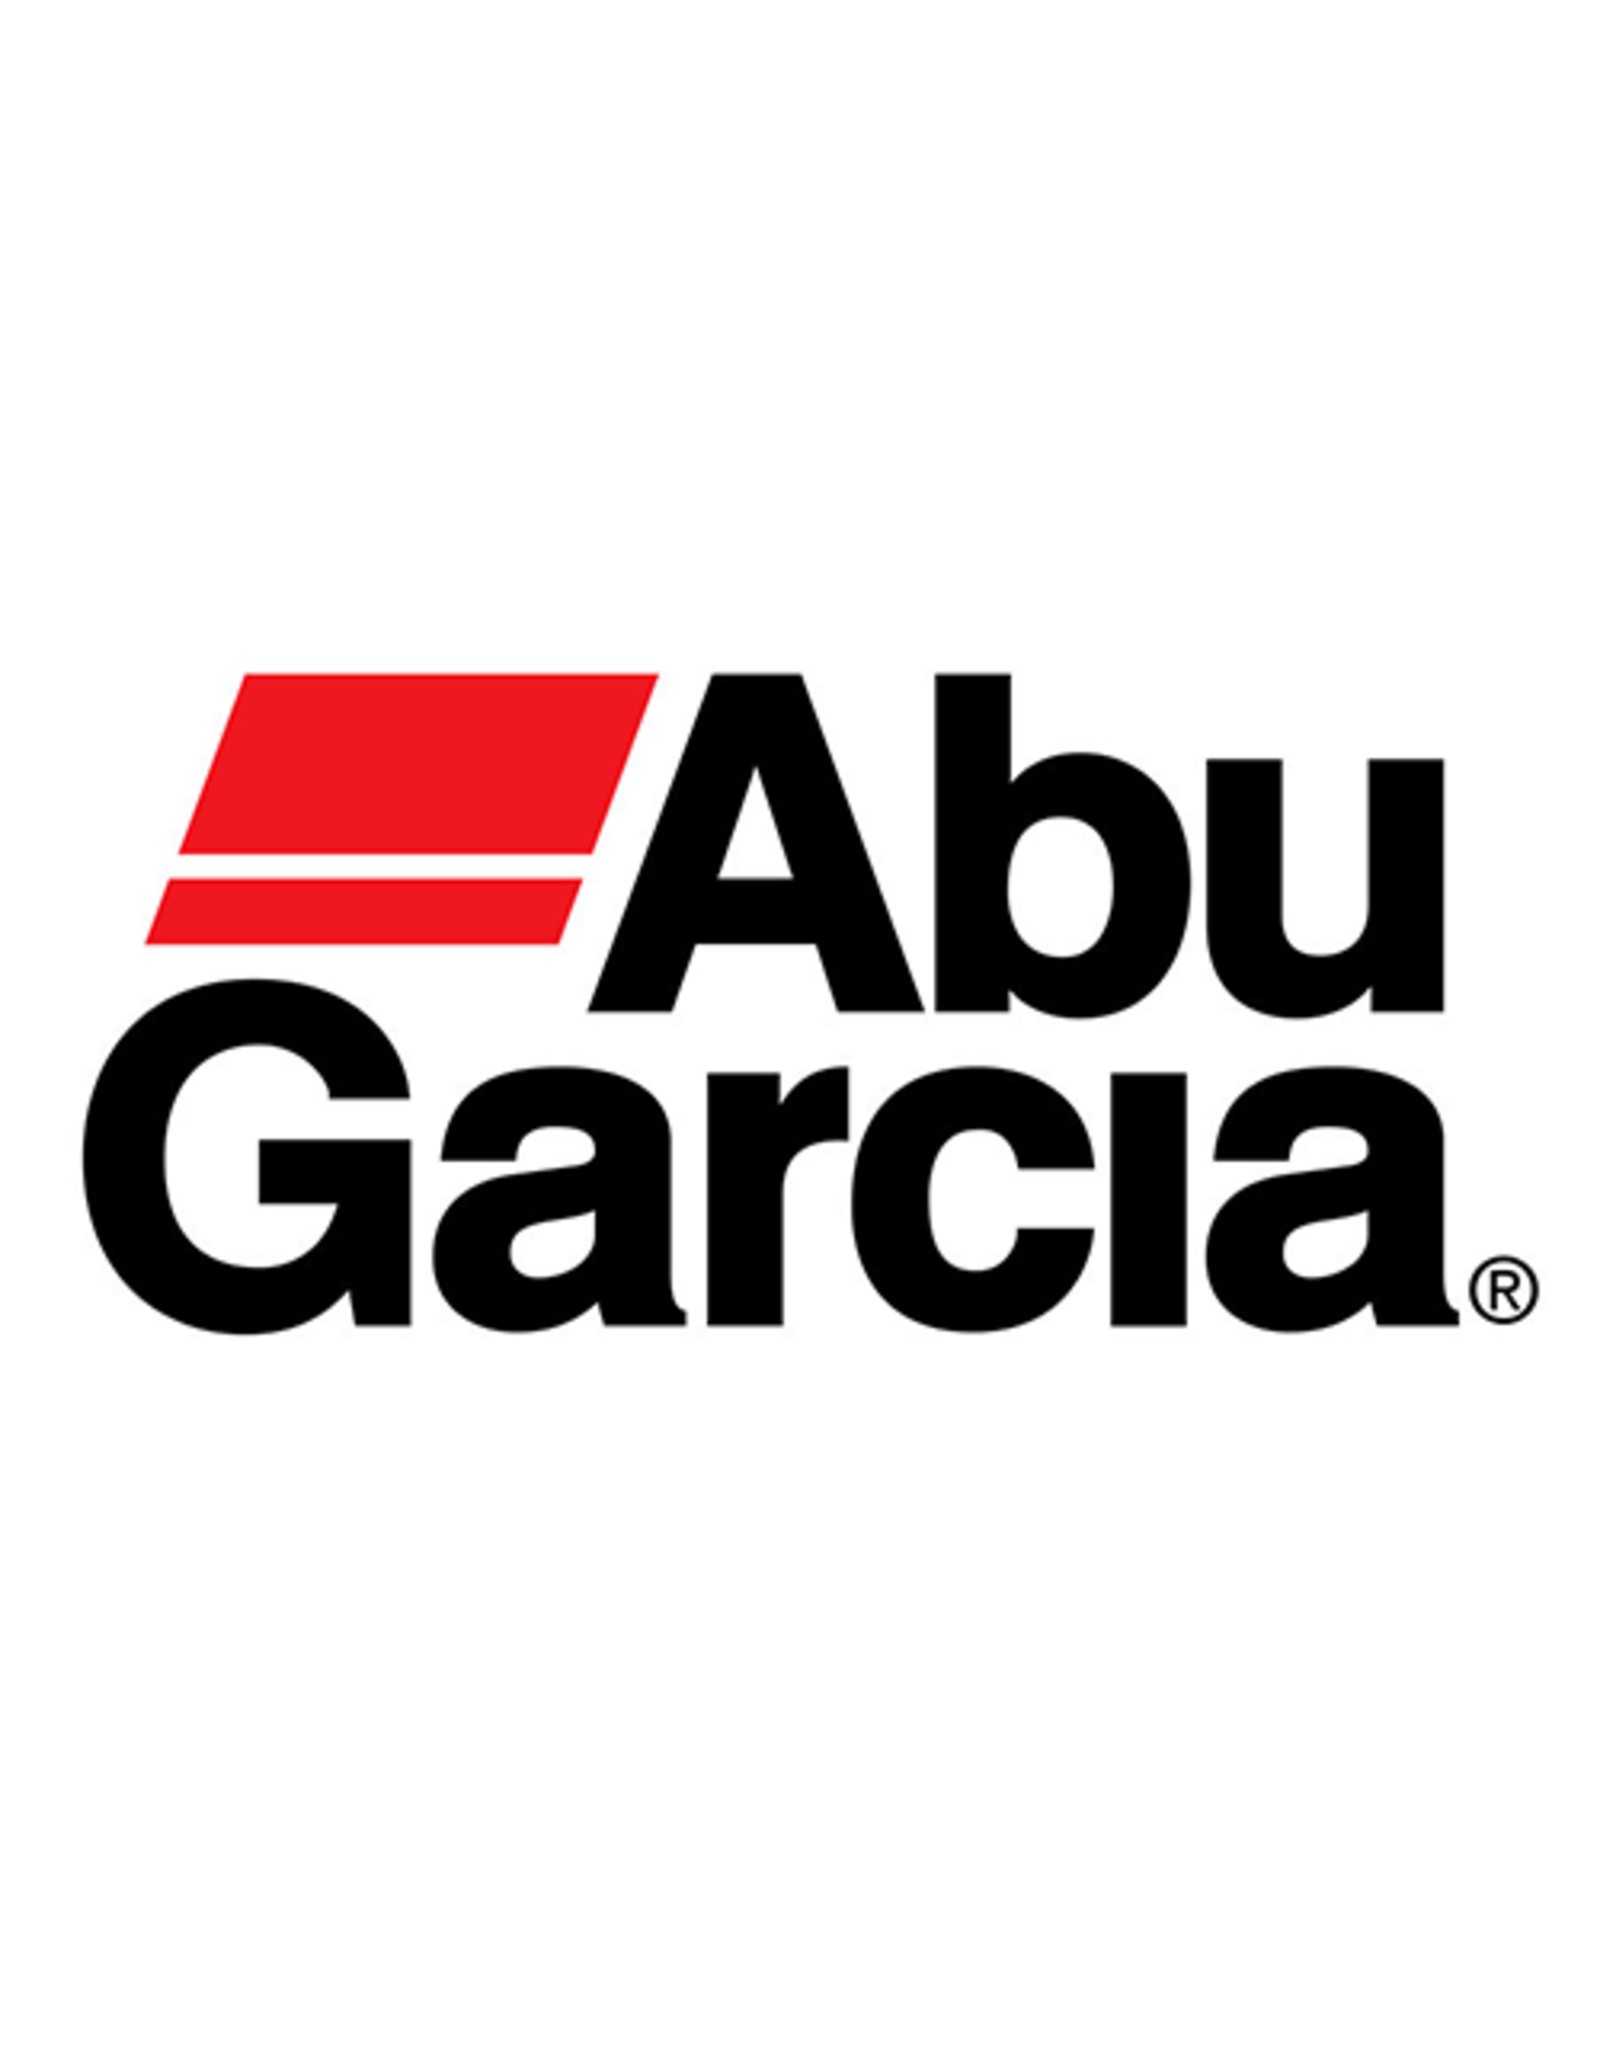 Abu Garcia 1378767  O RING